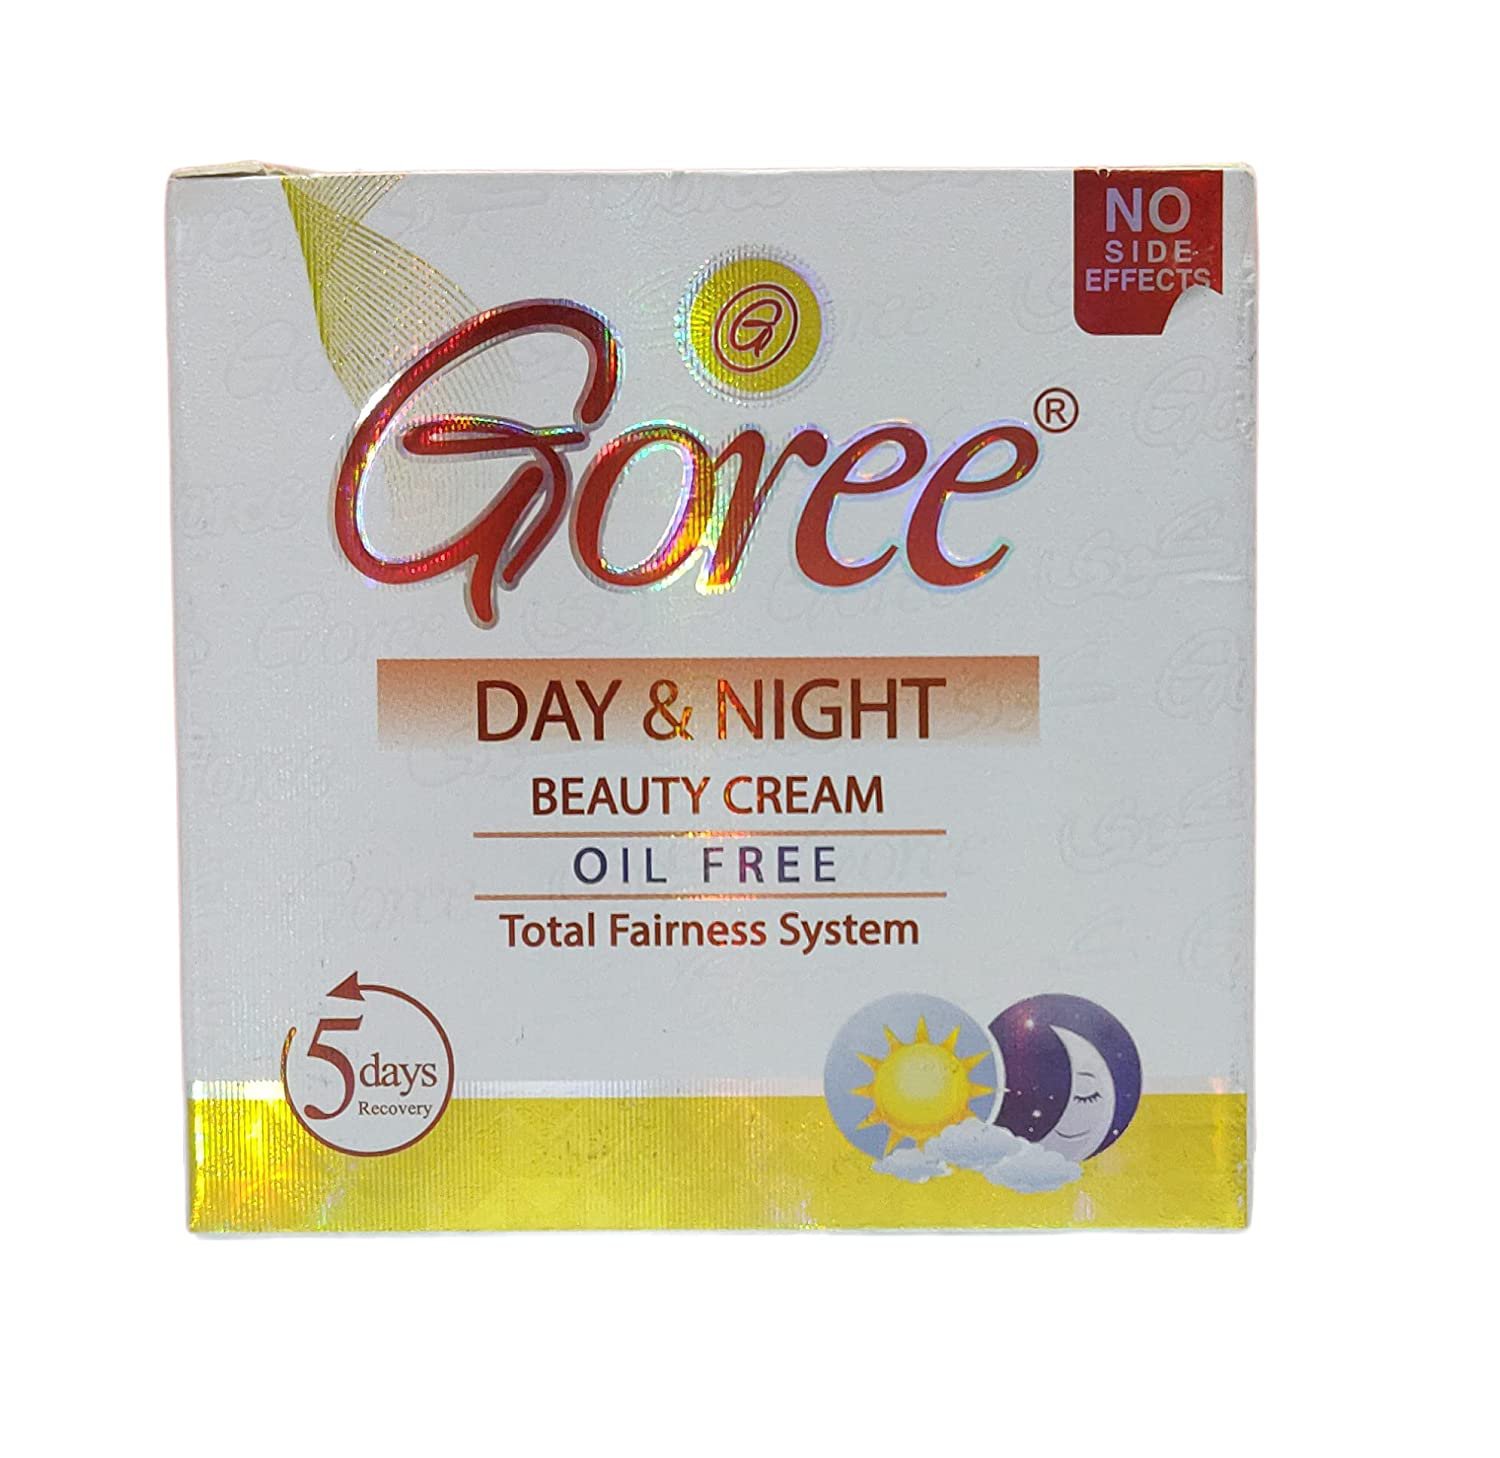 GOREE DAY & NIGHT Skin Lightening Cream, Brightening Cream,Nourishes, Repairs & Restores Skin - 30g